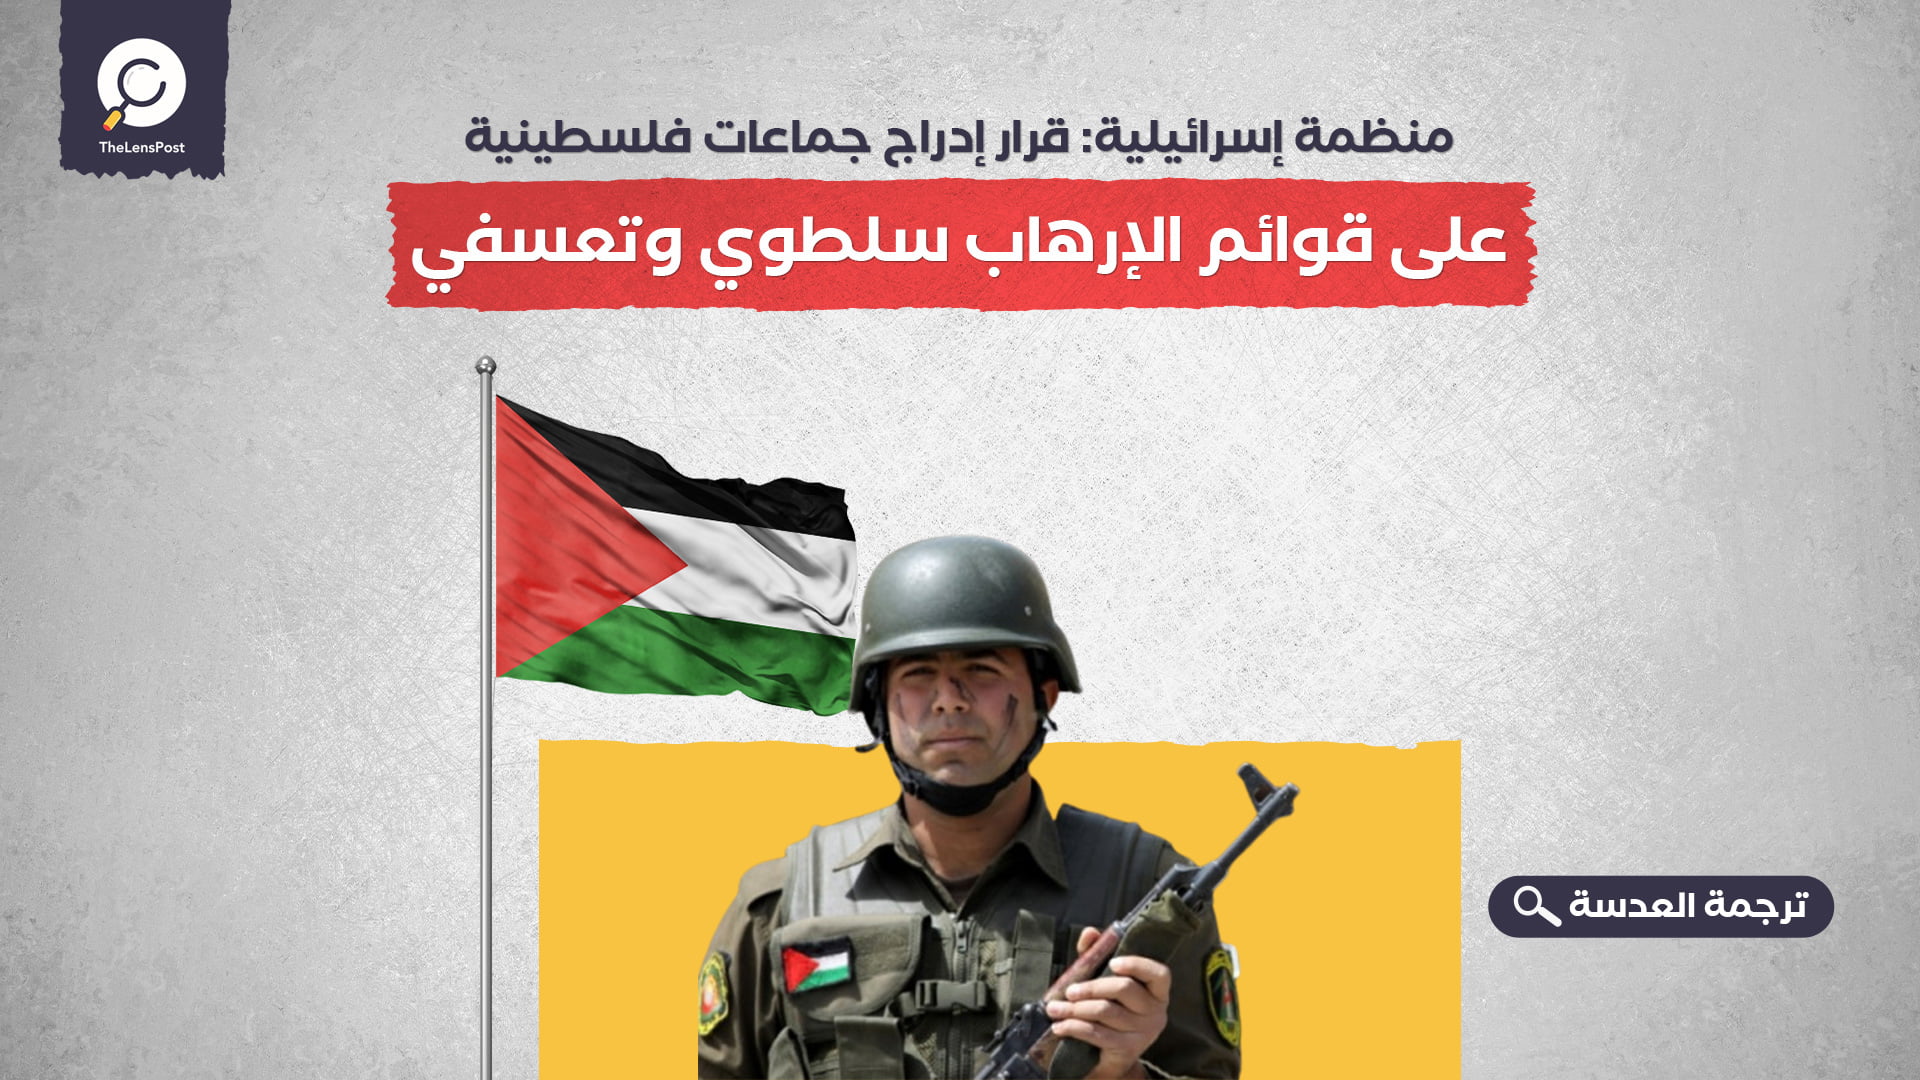 منظمة إسرائيلية: قرار إدراج جماعات فلسطينية على قوائم الإرهاب سلطوي وتعسفي